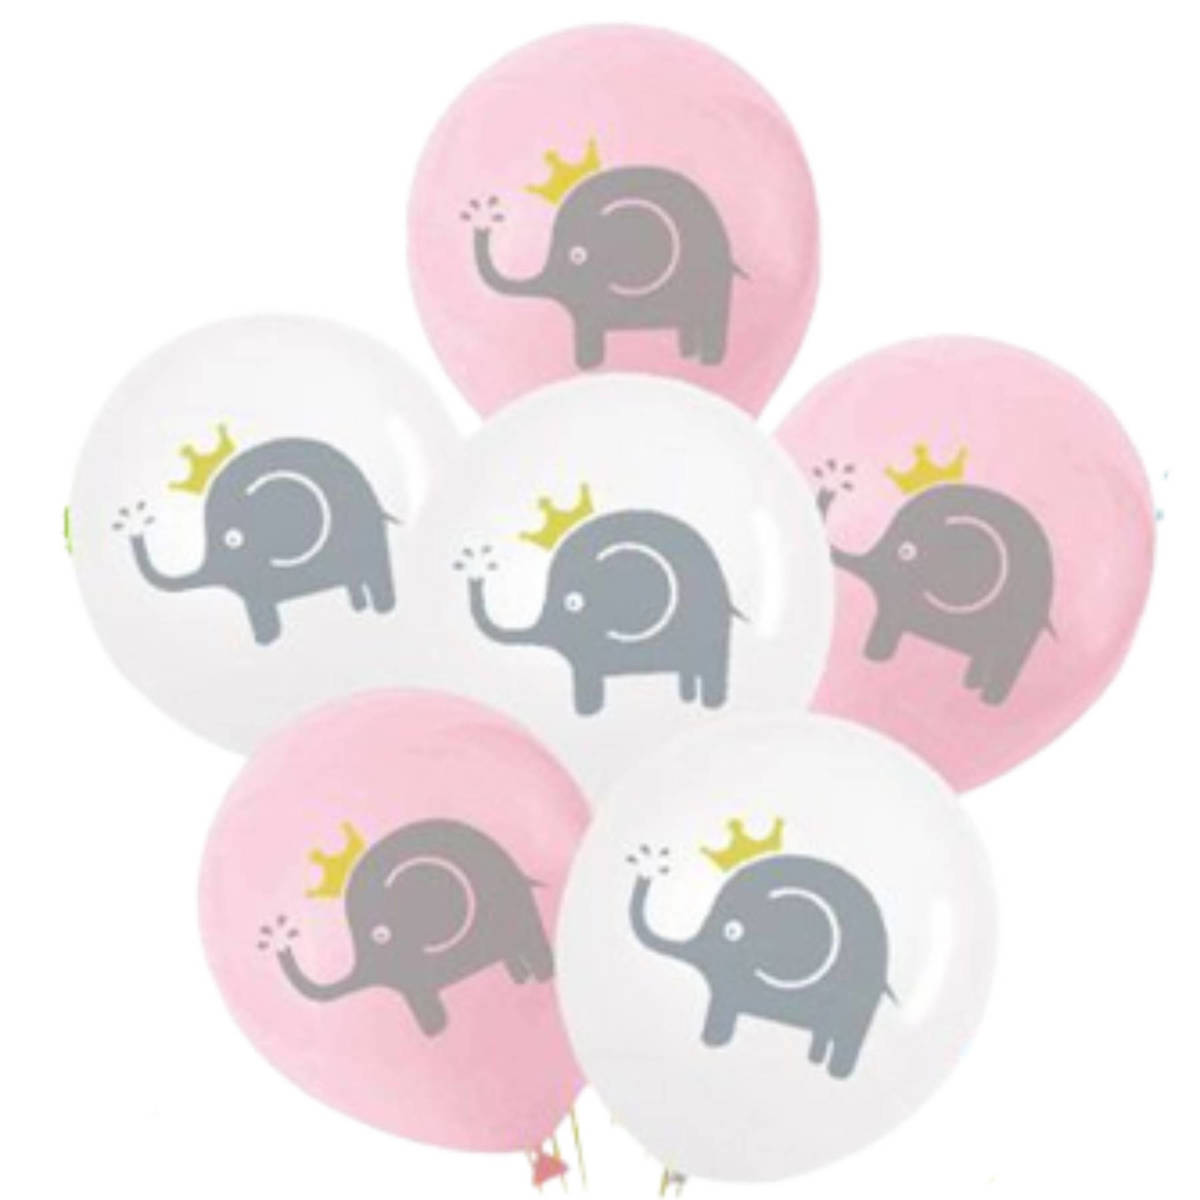 Zestaw balonów słonie białe i różowe 6 szt.